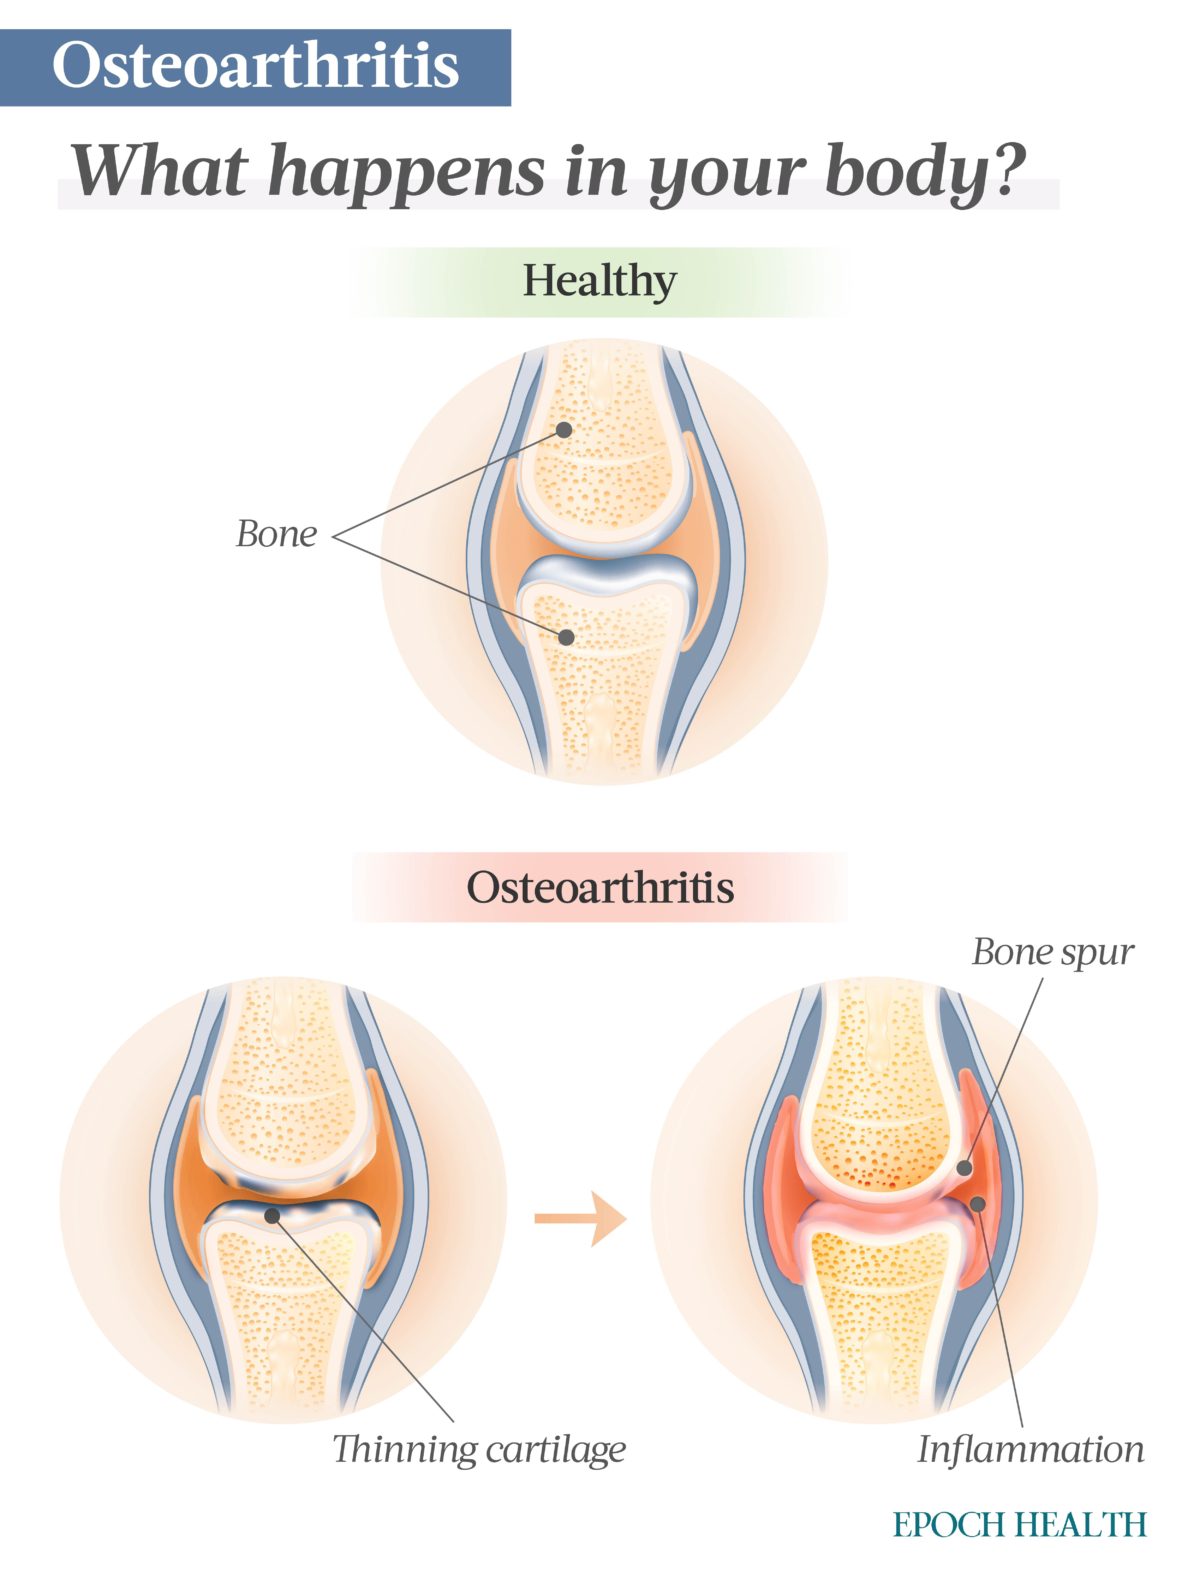 En la osteoartritis primaria, una sobreproducción de enzimas desencadena el deterioro del cartílago y la inflamación y, finalmente, los espolones óseos. (The Epoch Times)